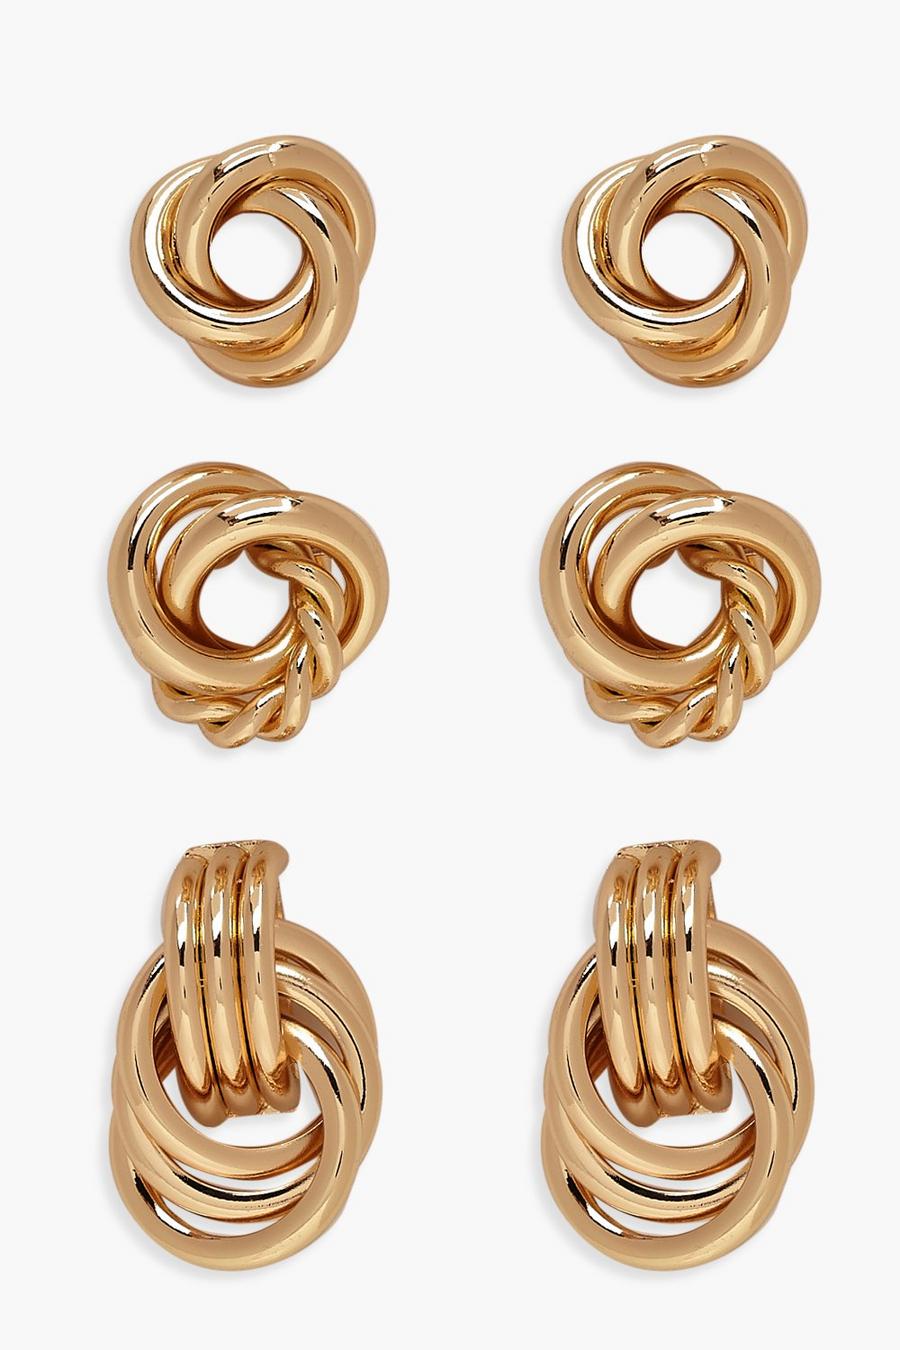 Gold metallic Twist Knot Stud Pack